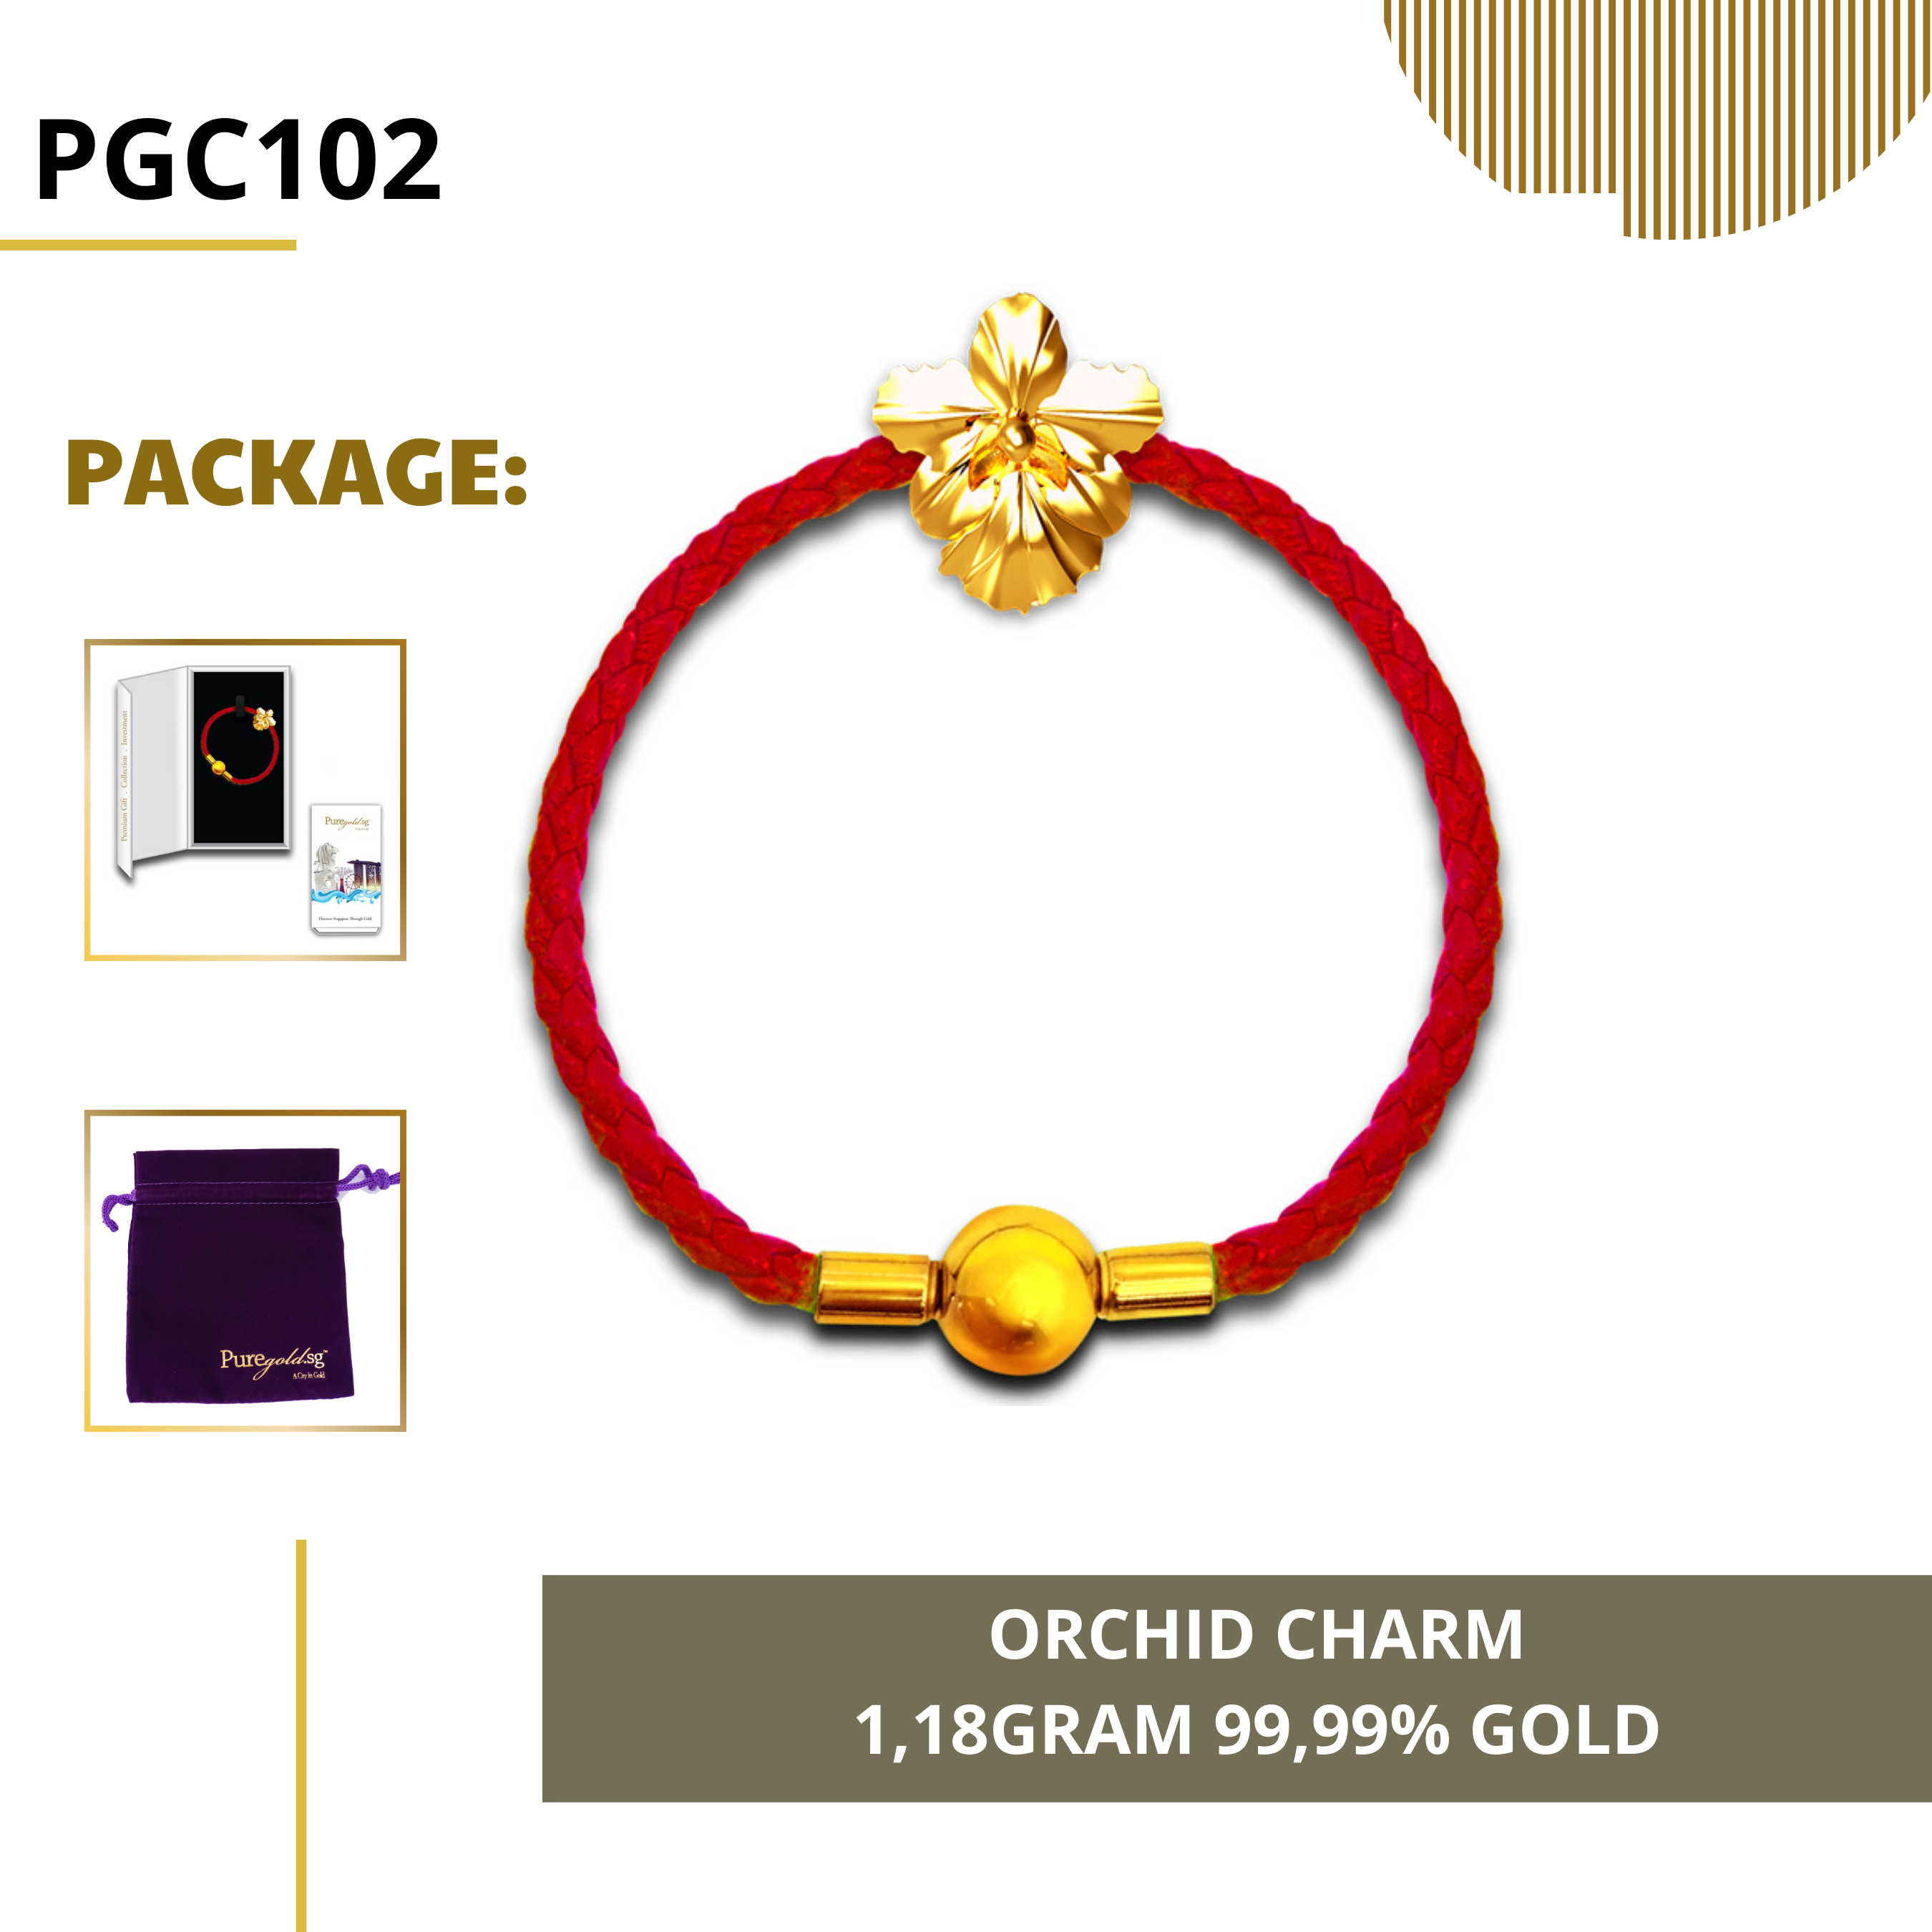 PURE GOLD 99.99% ทองคำแท่ง / Orchid charm/ ทองคำแท้จากสิงคโปร์ / ทองคำ 1,18 กรัม / ทอง 99.99% *การันตีทองแท้*